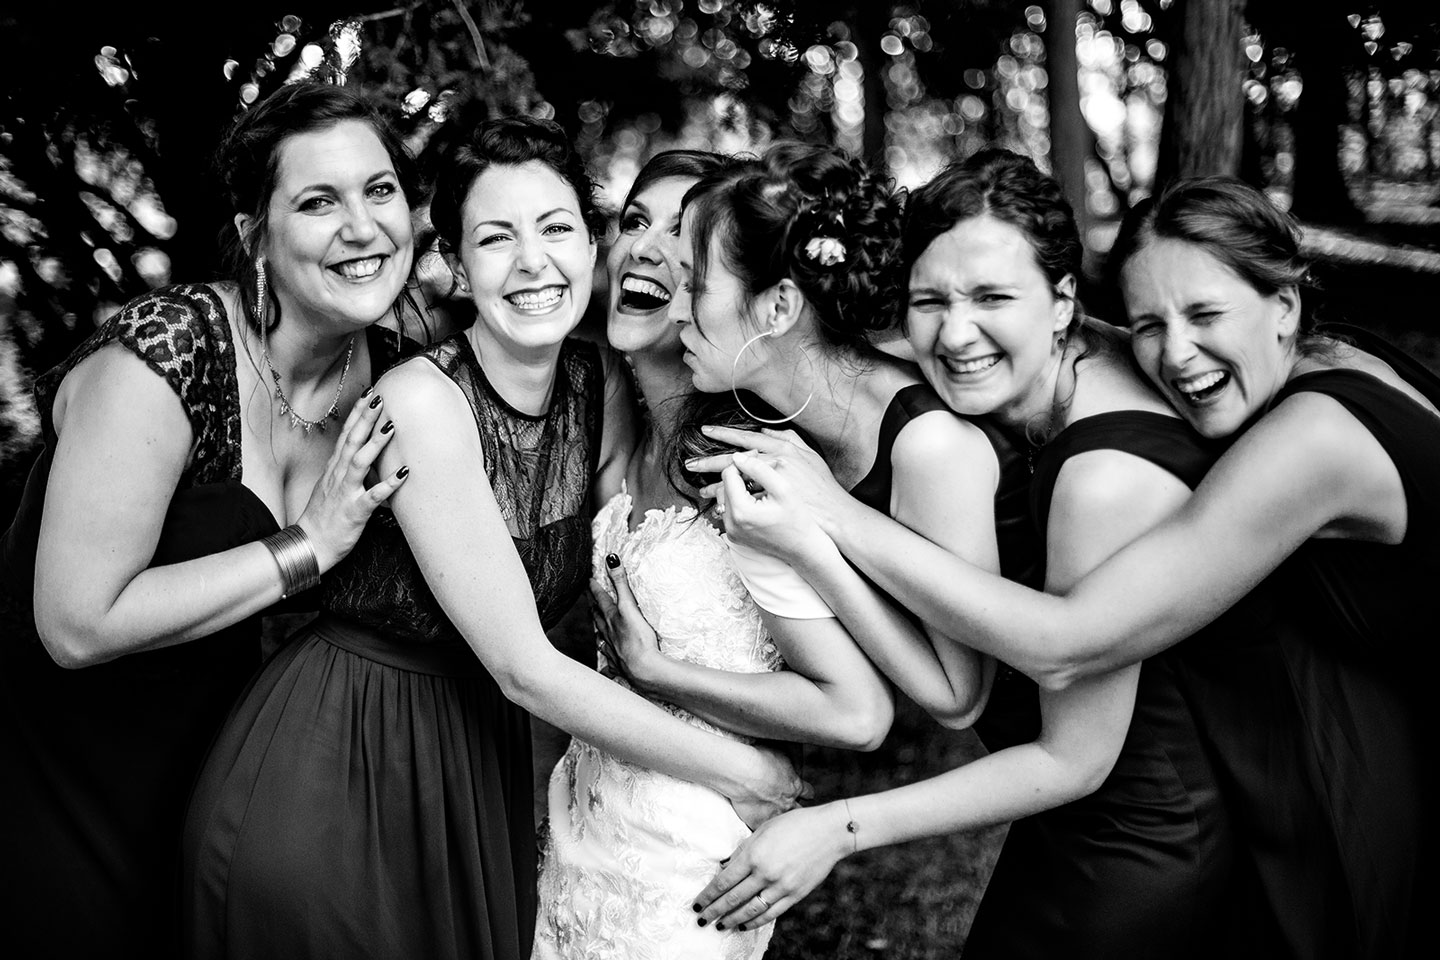 Comment réaliser les photos de groupe durant le mariage?